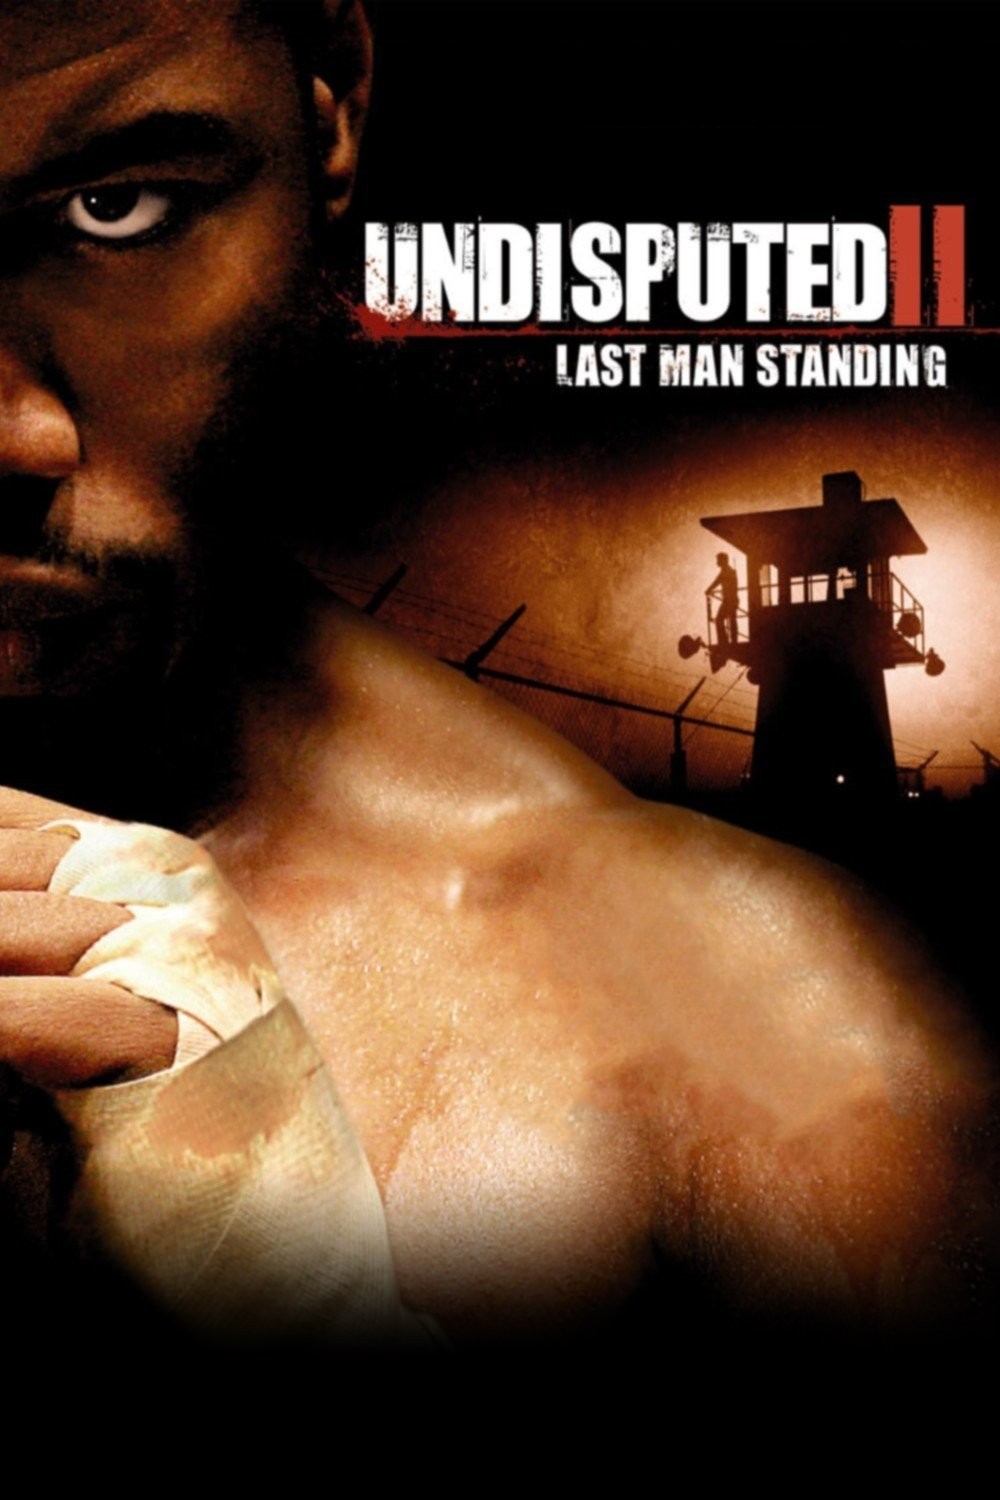 download undisputed 4 movie